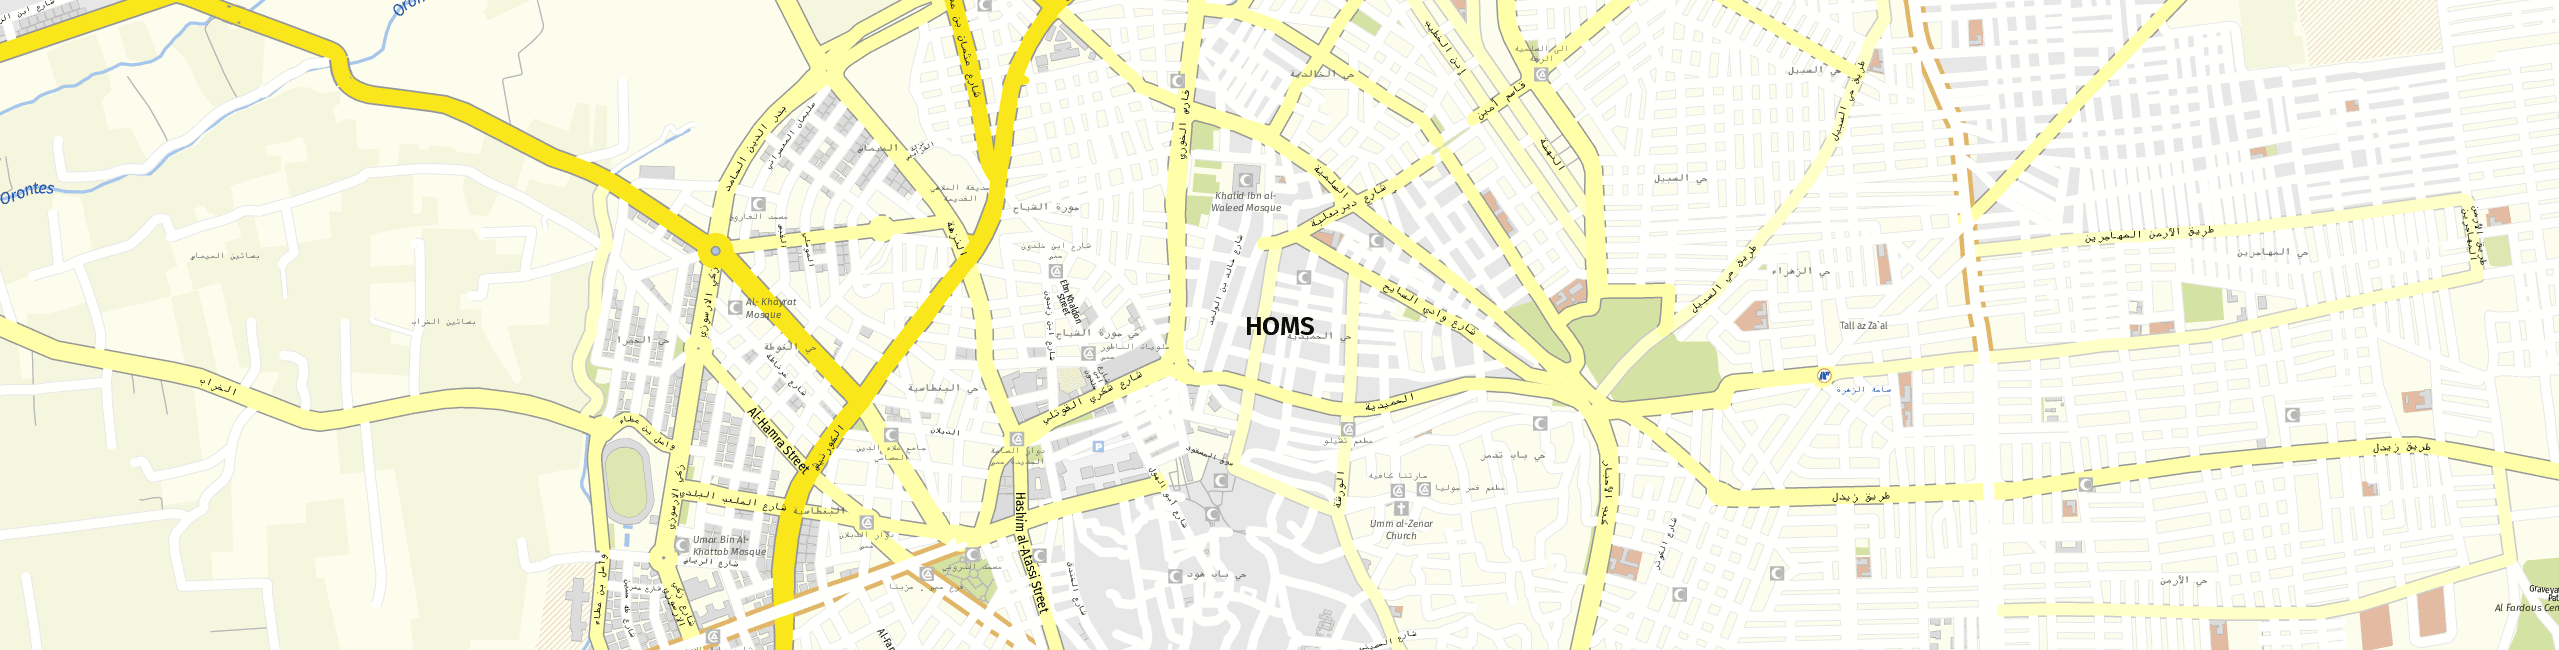 Stadtplan Homs zum Downloaden.